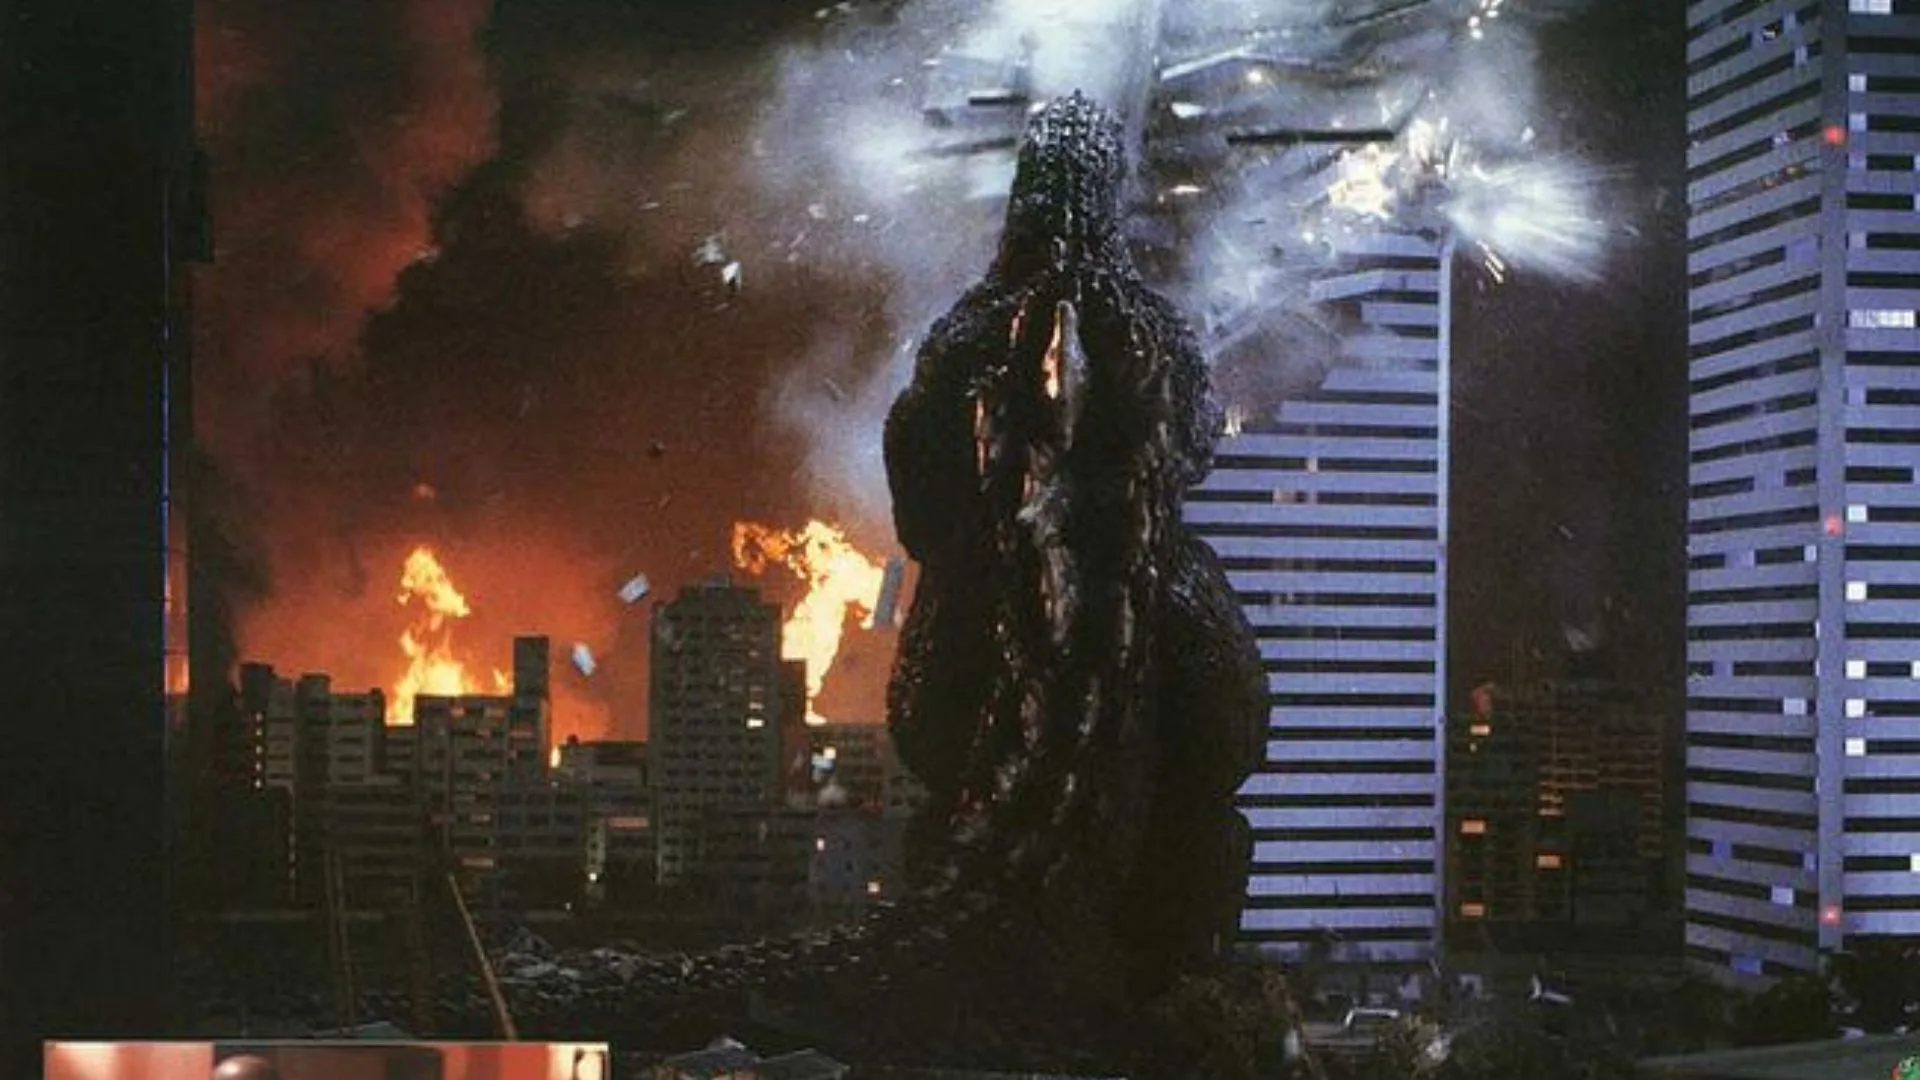 Clasificamos a los Godzilla de la historia del cine, del más poderoso al más enclenque, en este ranking que mide también su poder taquillero.